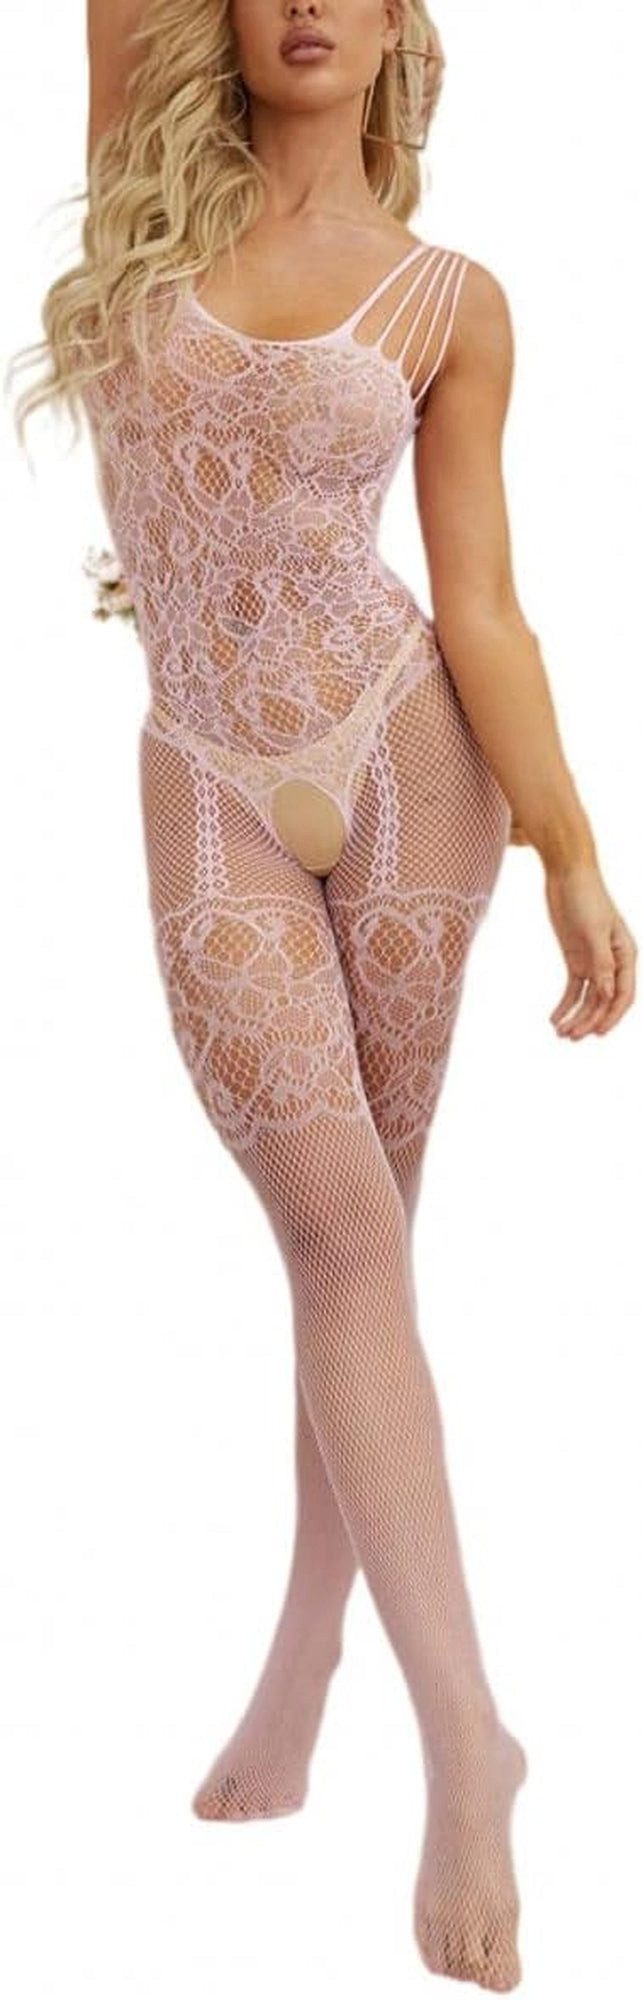 YRIIOMO Set: Ouvert-BH Sexy Damen mit Trägern und Netzstrümpfen, ohne Unterhose,Valentinstagsgeschenk, Einheitsgröße.